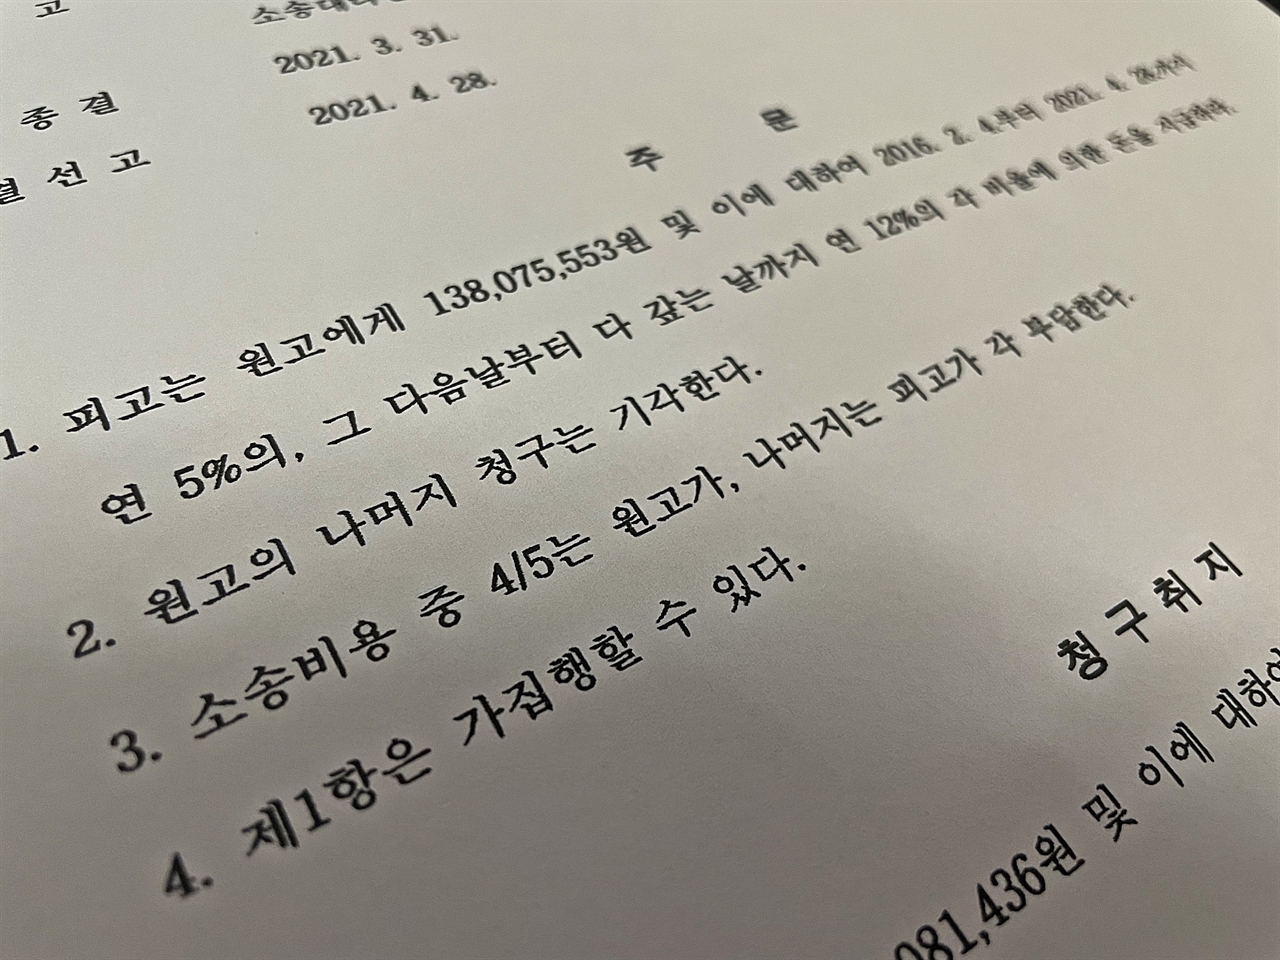 2021년 4월, 대전지법은 친부 성폭력 사건에 대한 손해배상 소송에서 피고가 원고에게 총 1억 3807만 5553원을 지급하라고 명했다.